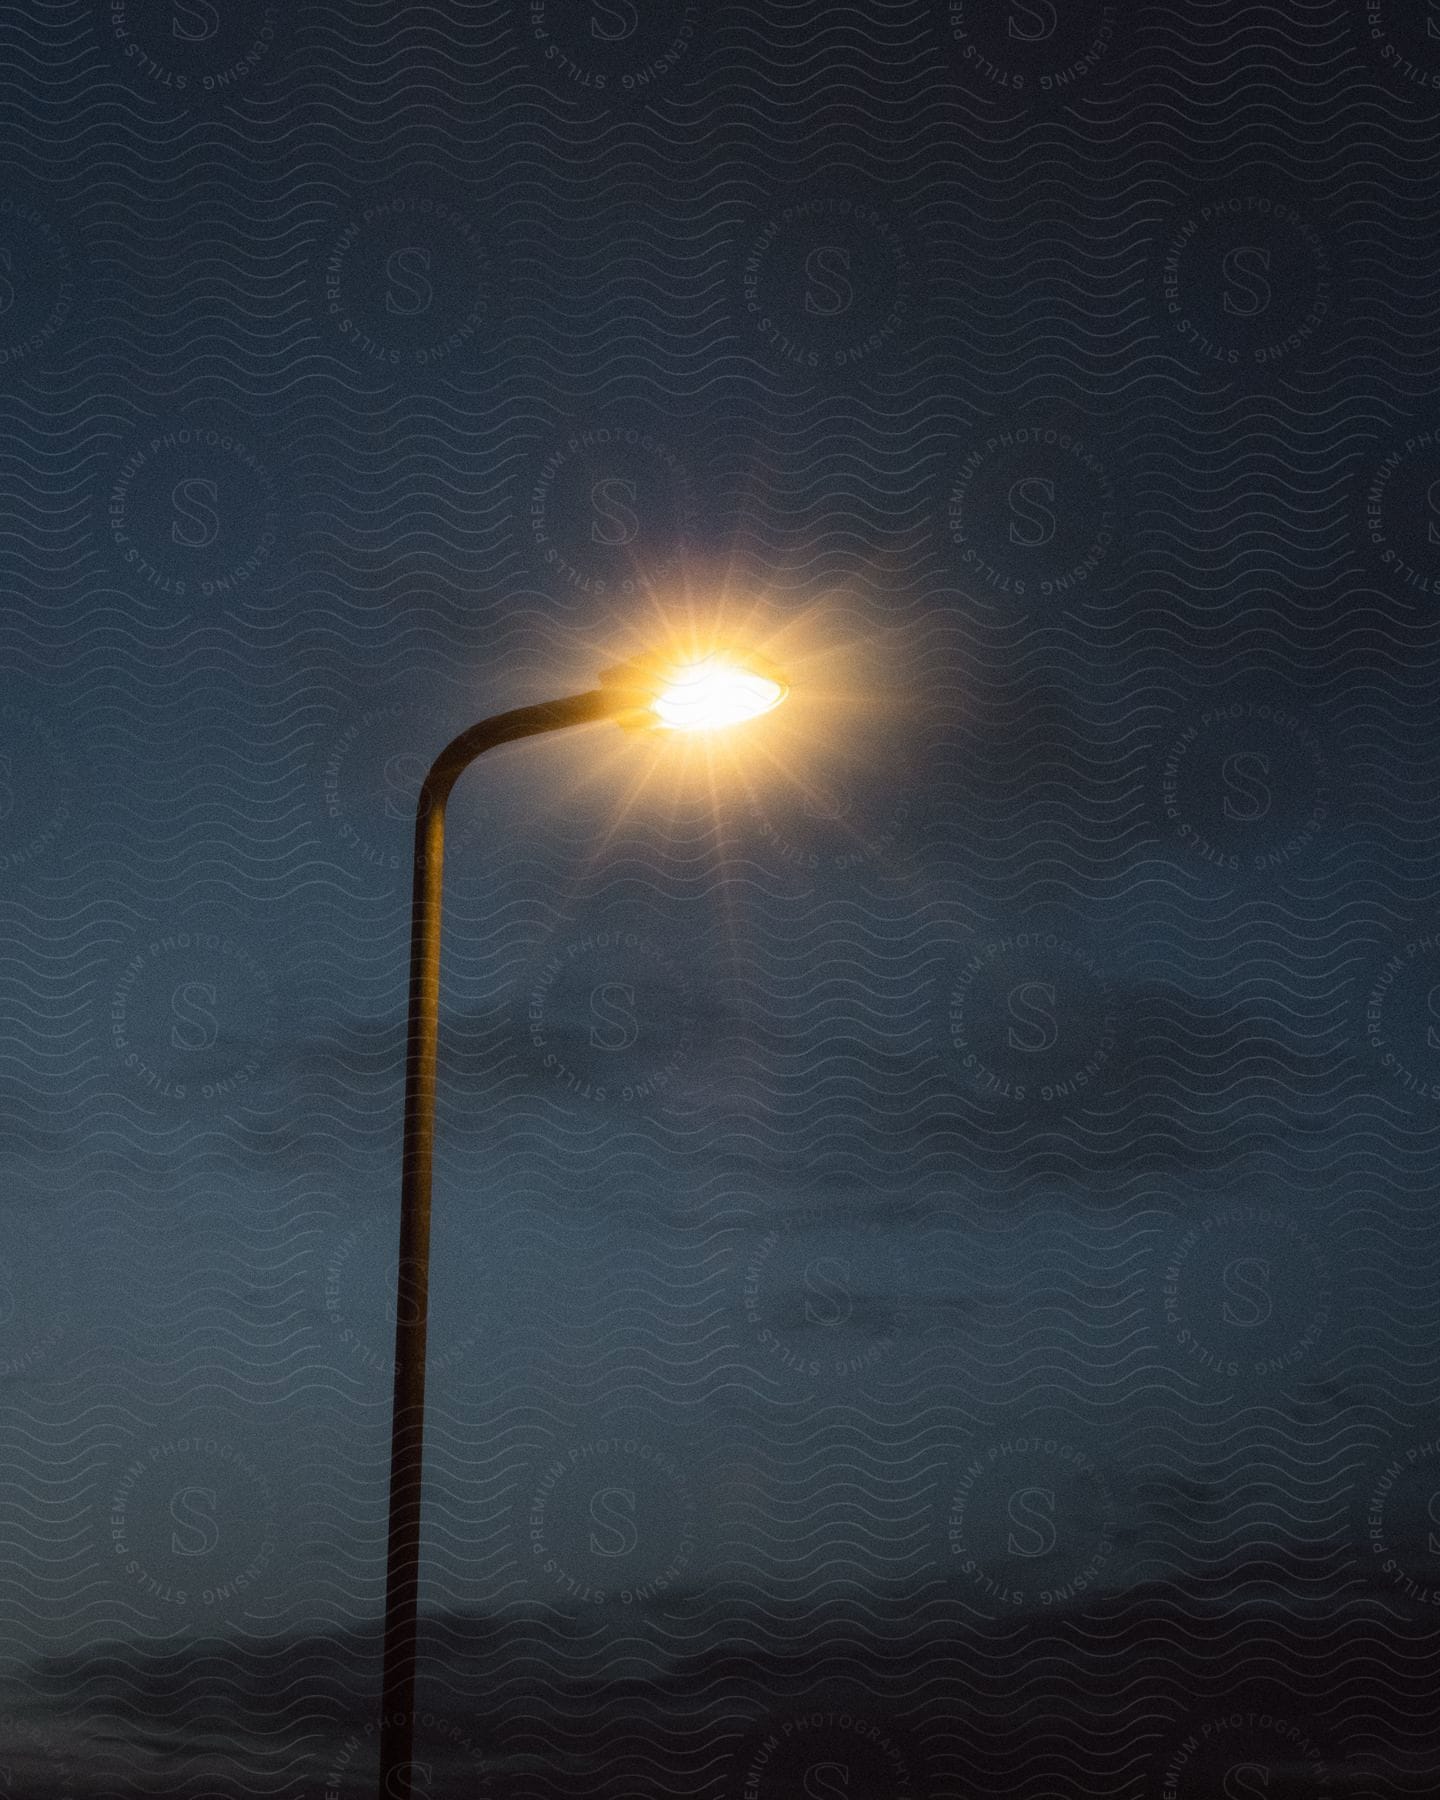 An image of a street light